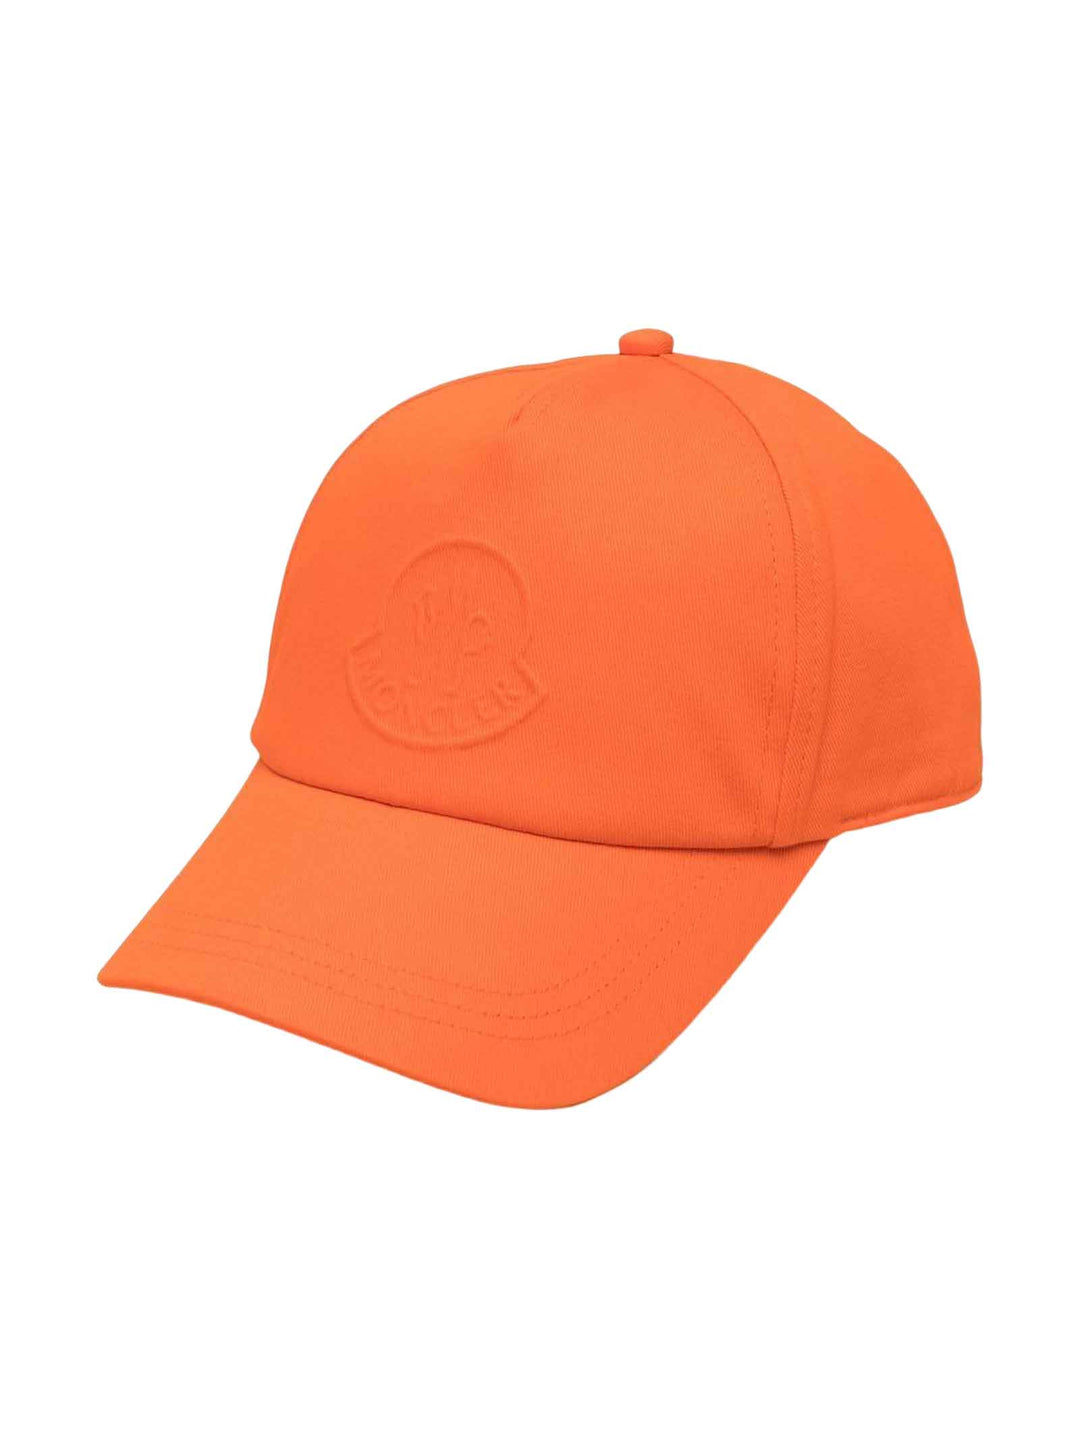 Cappello arancione unisex